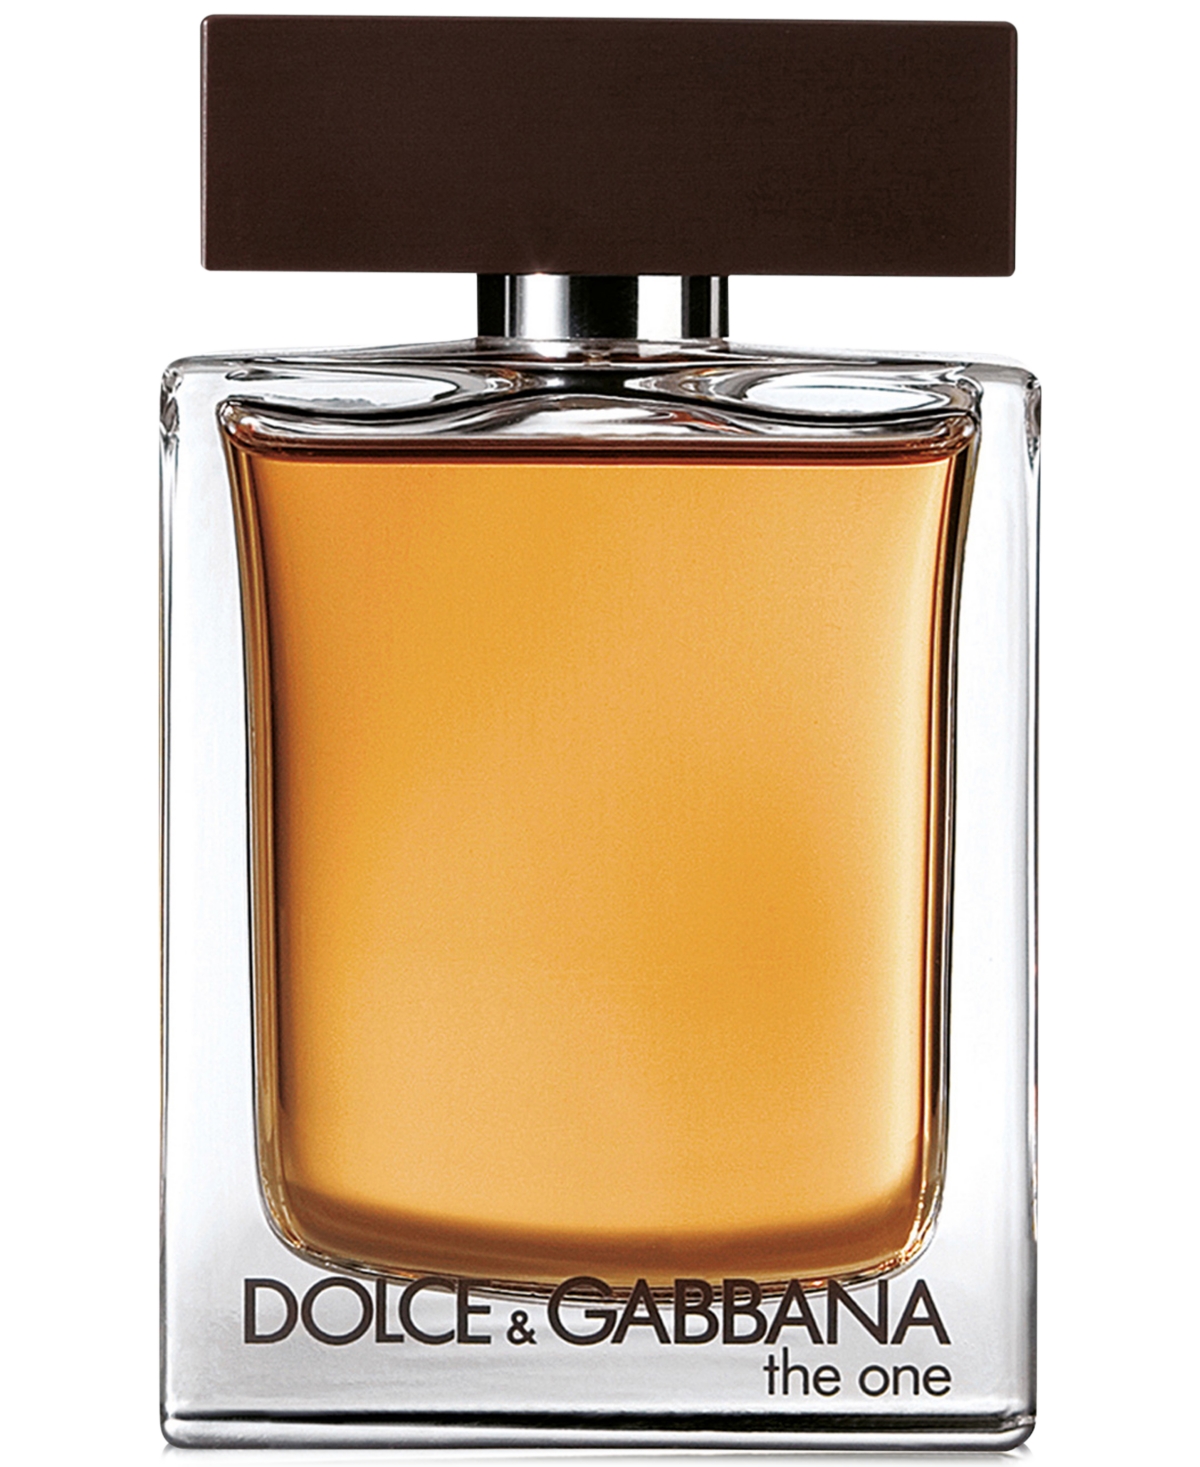 Dolce&Gabbana Men's The One Eau de Toilette Spray, 3.3 oz.